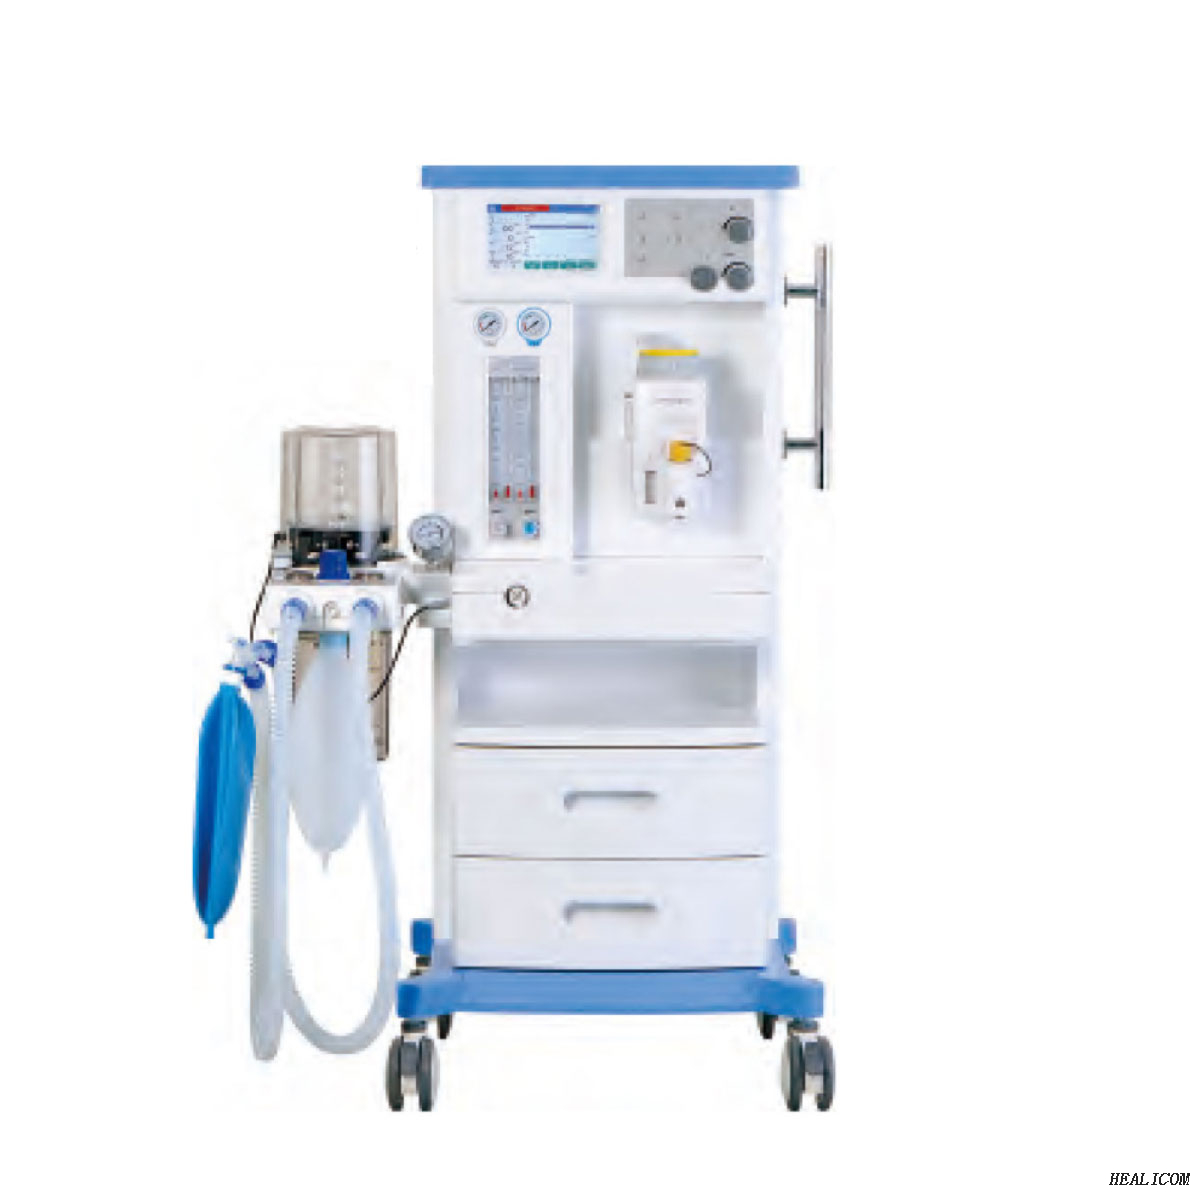 2021 Healicom advanced medical equipment HA-6100D ICU máquina de anestesia sistema de anestesia